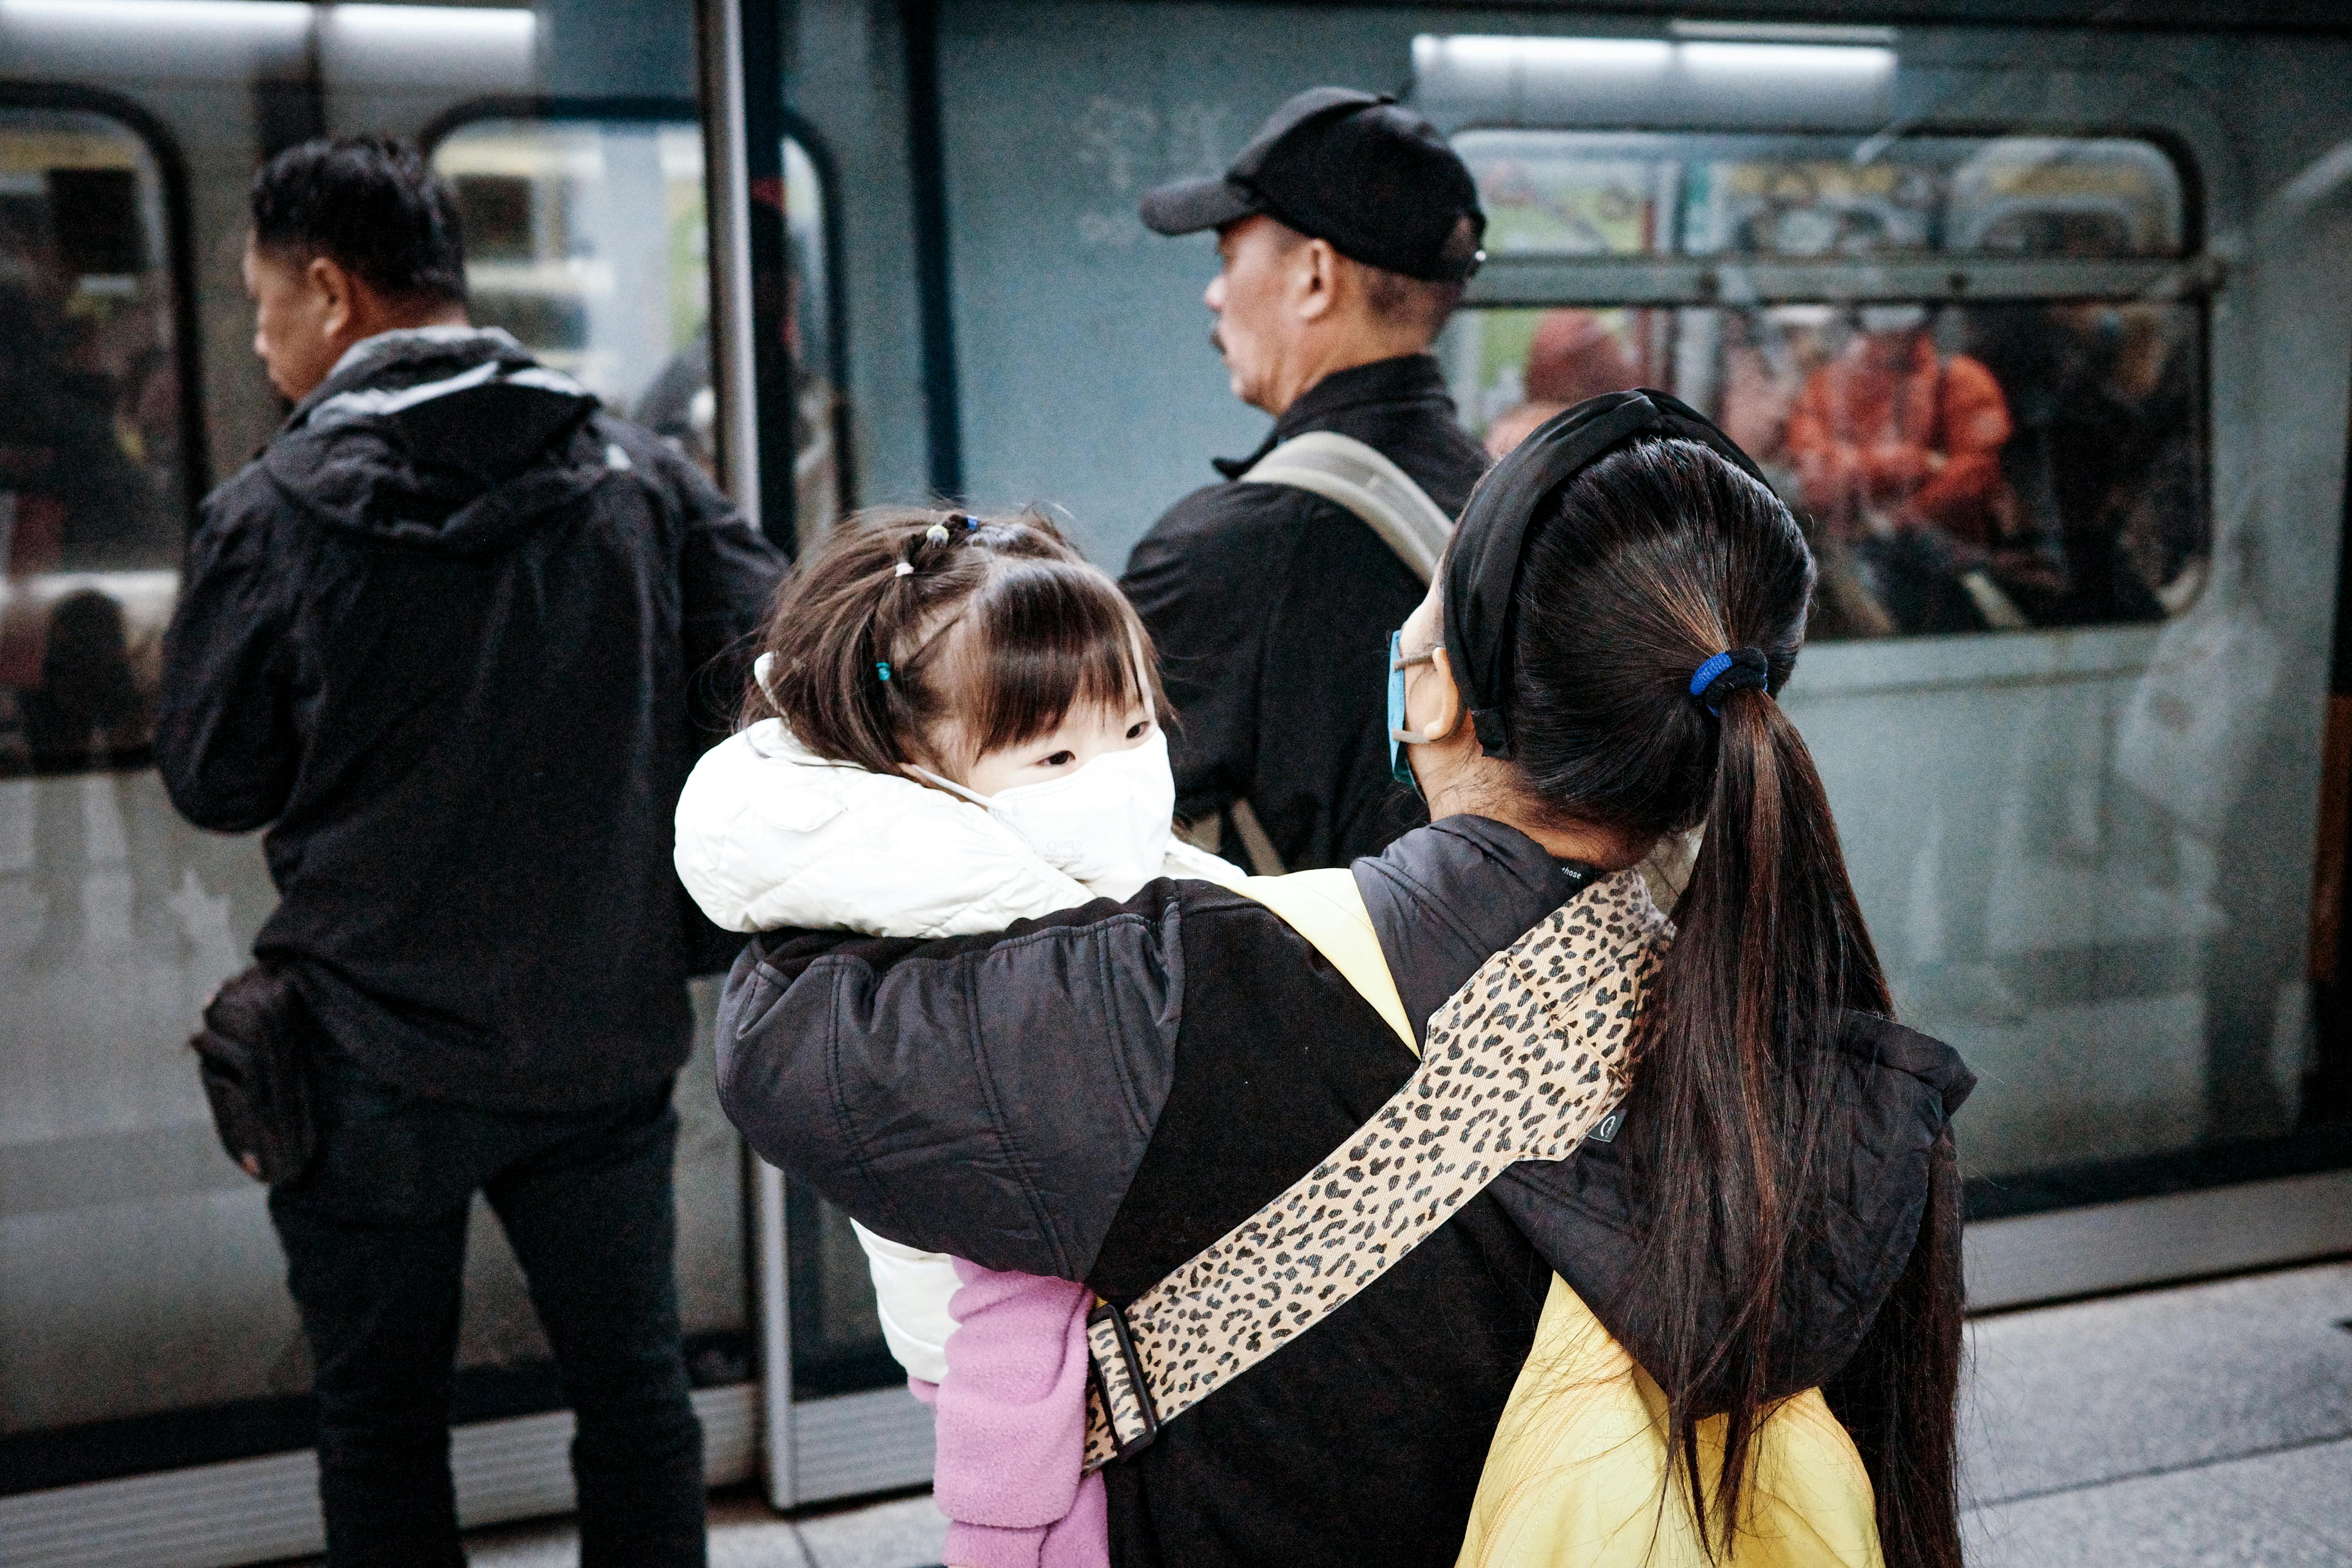 Une femme tenant un enfant s'apprête à monter dans le métro | Source : Pexels